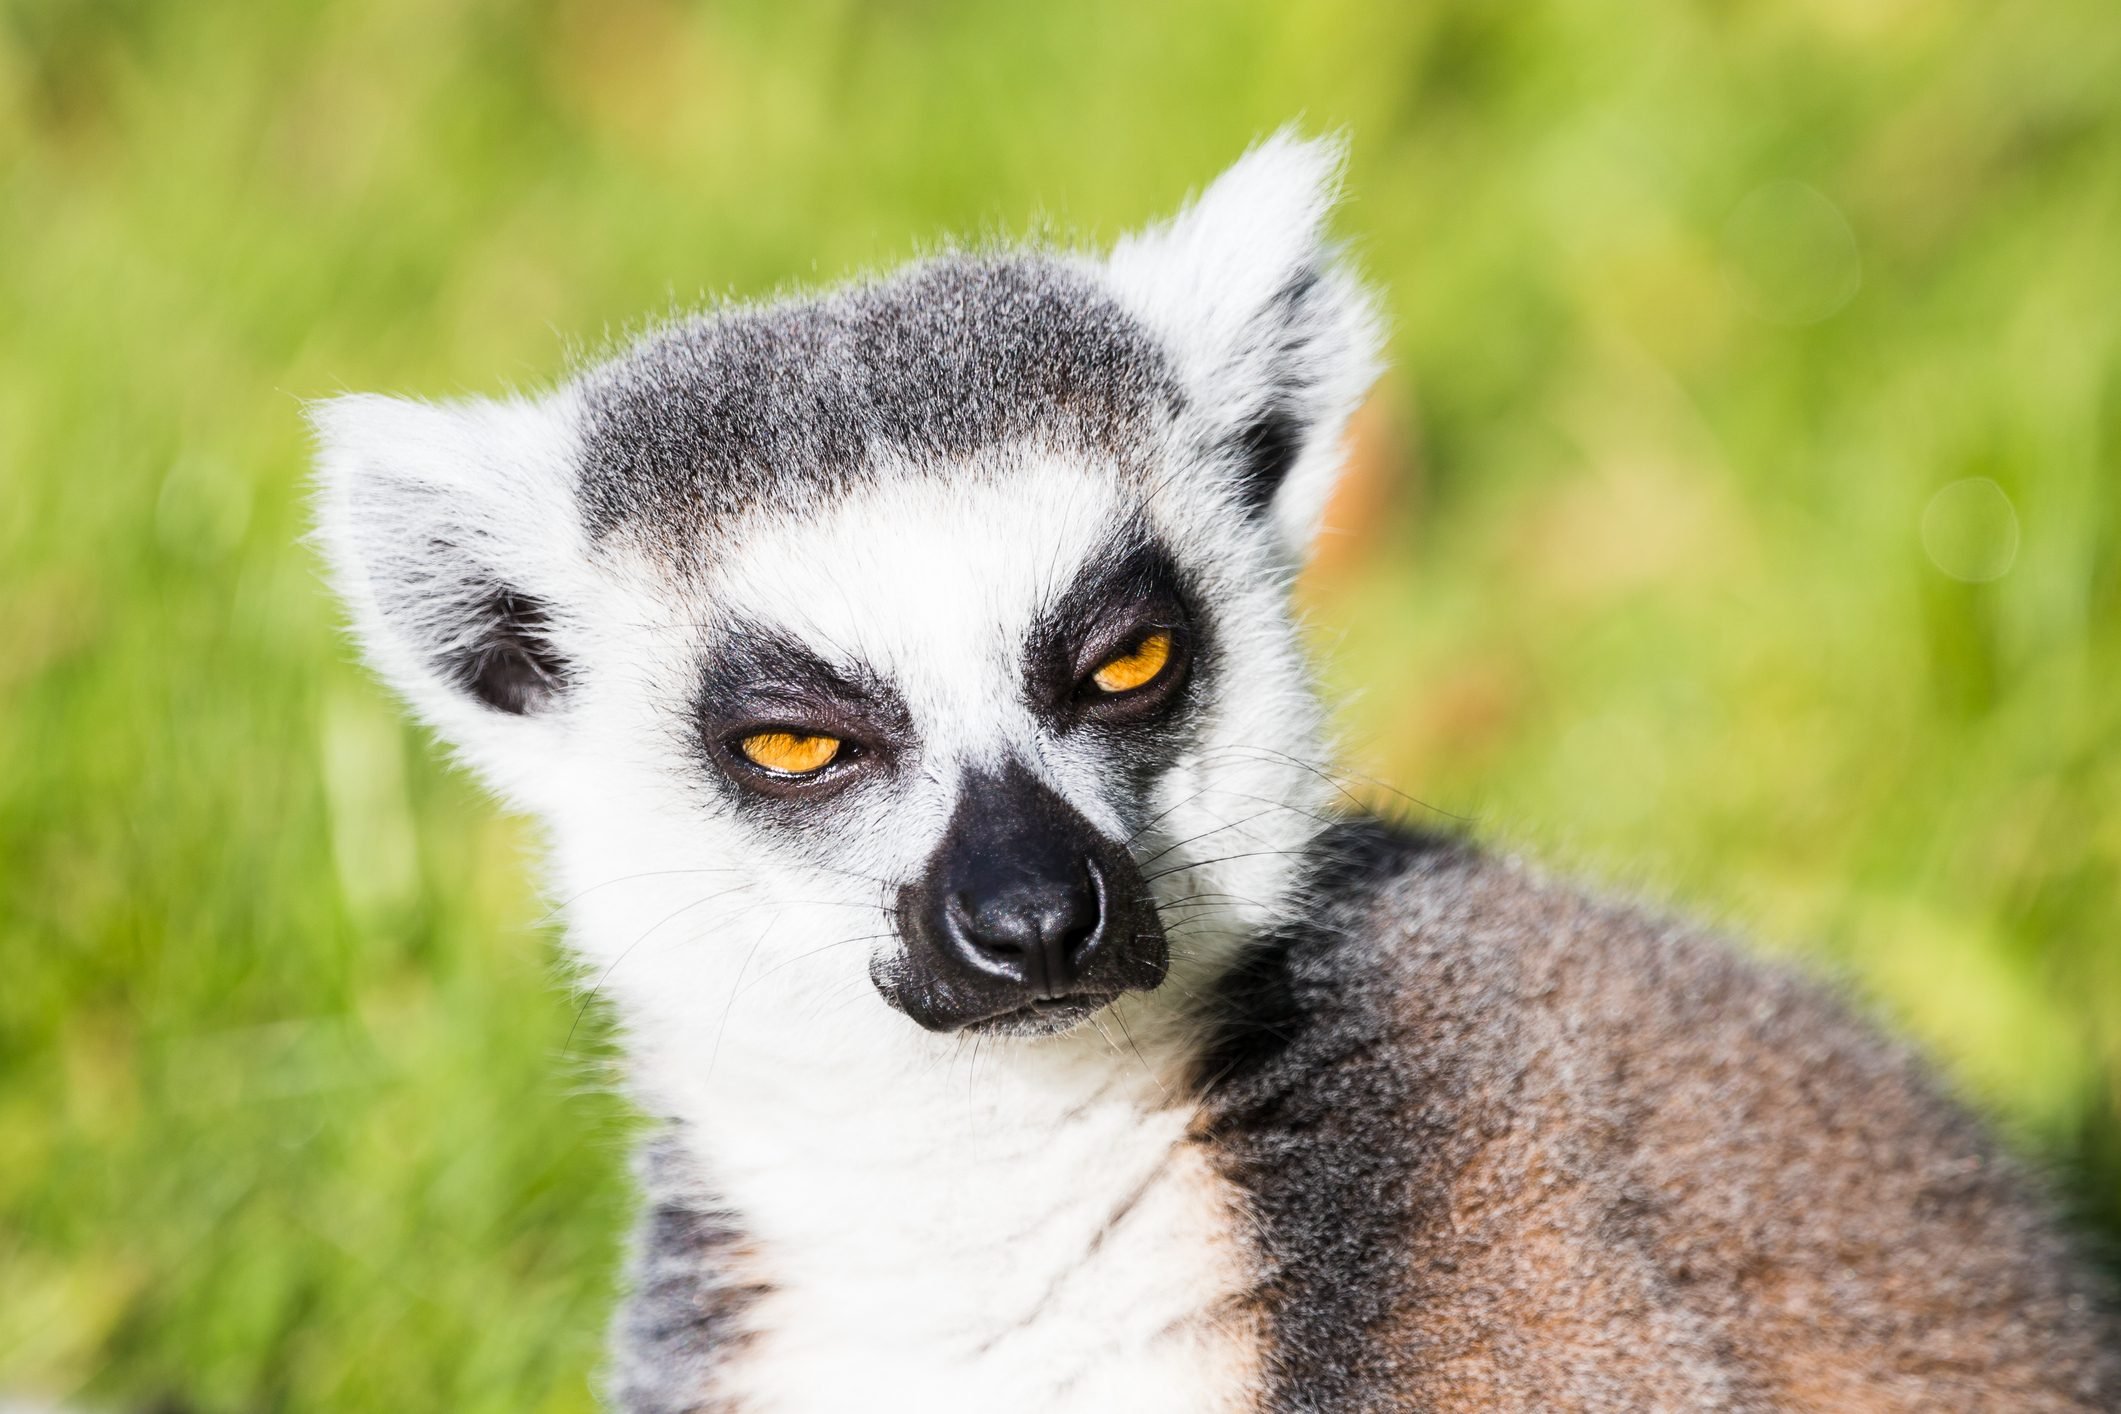 Ring tailed lemur gazes